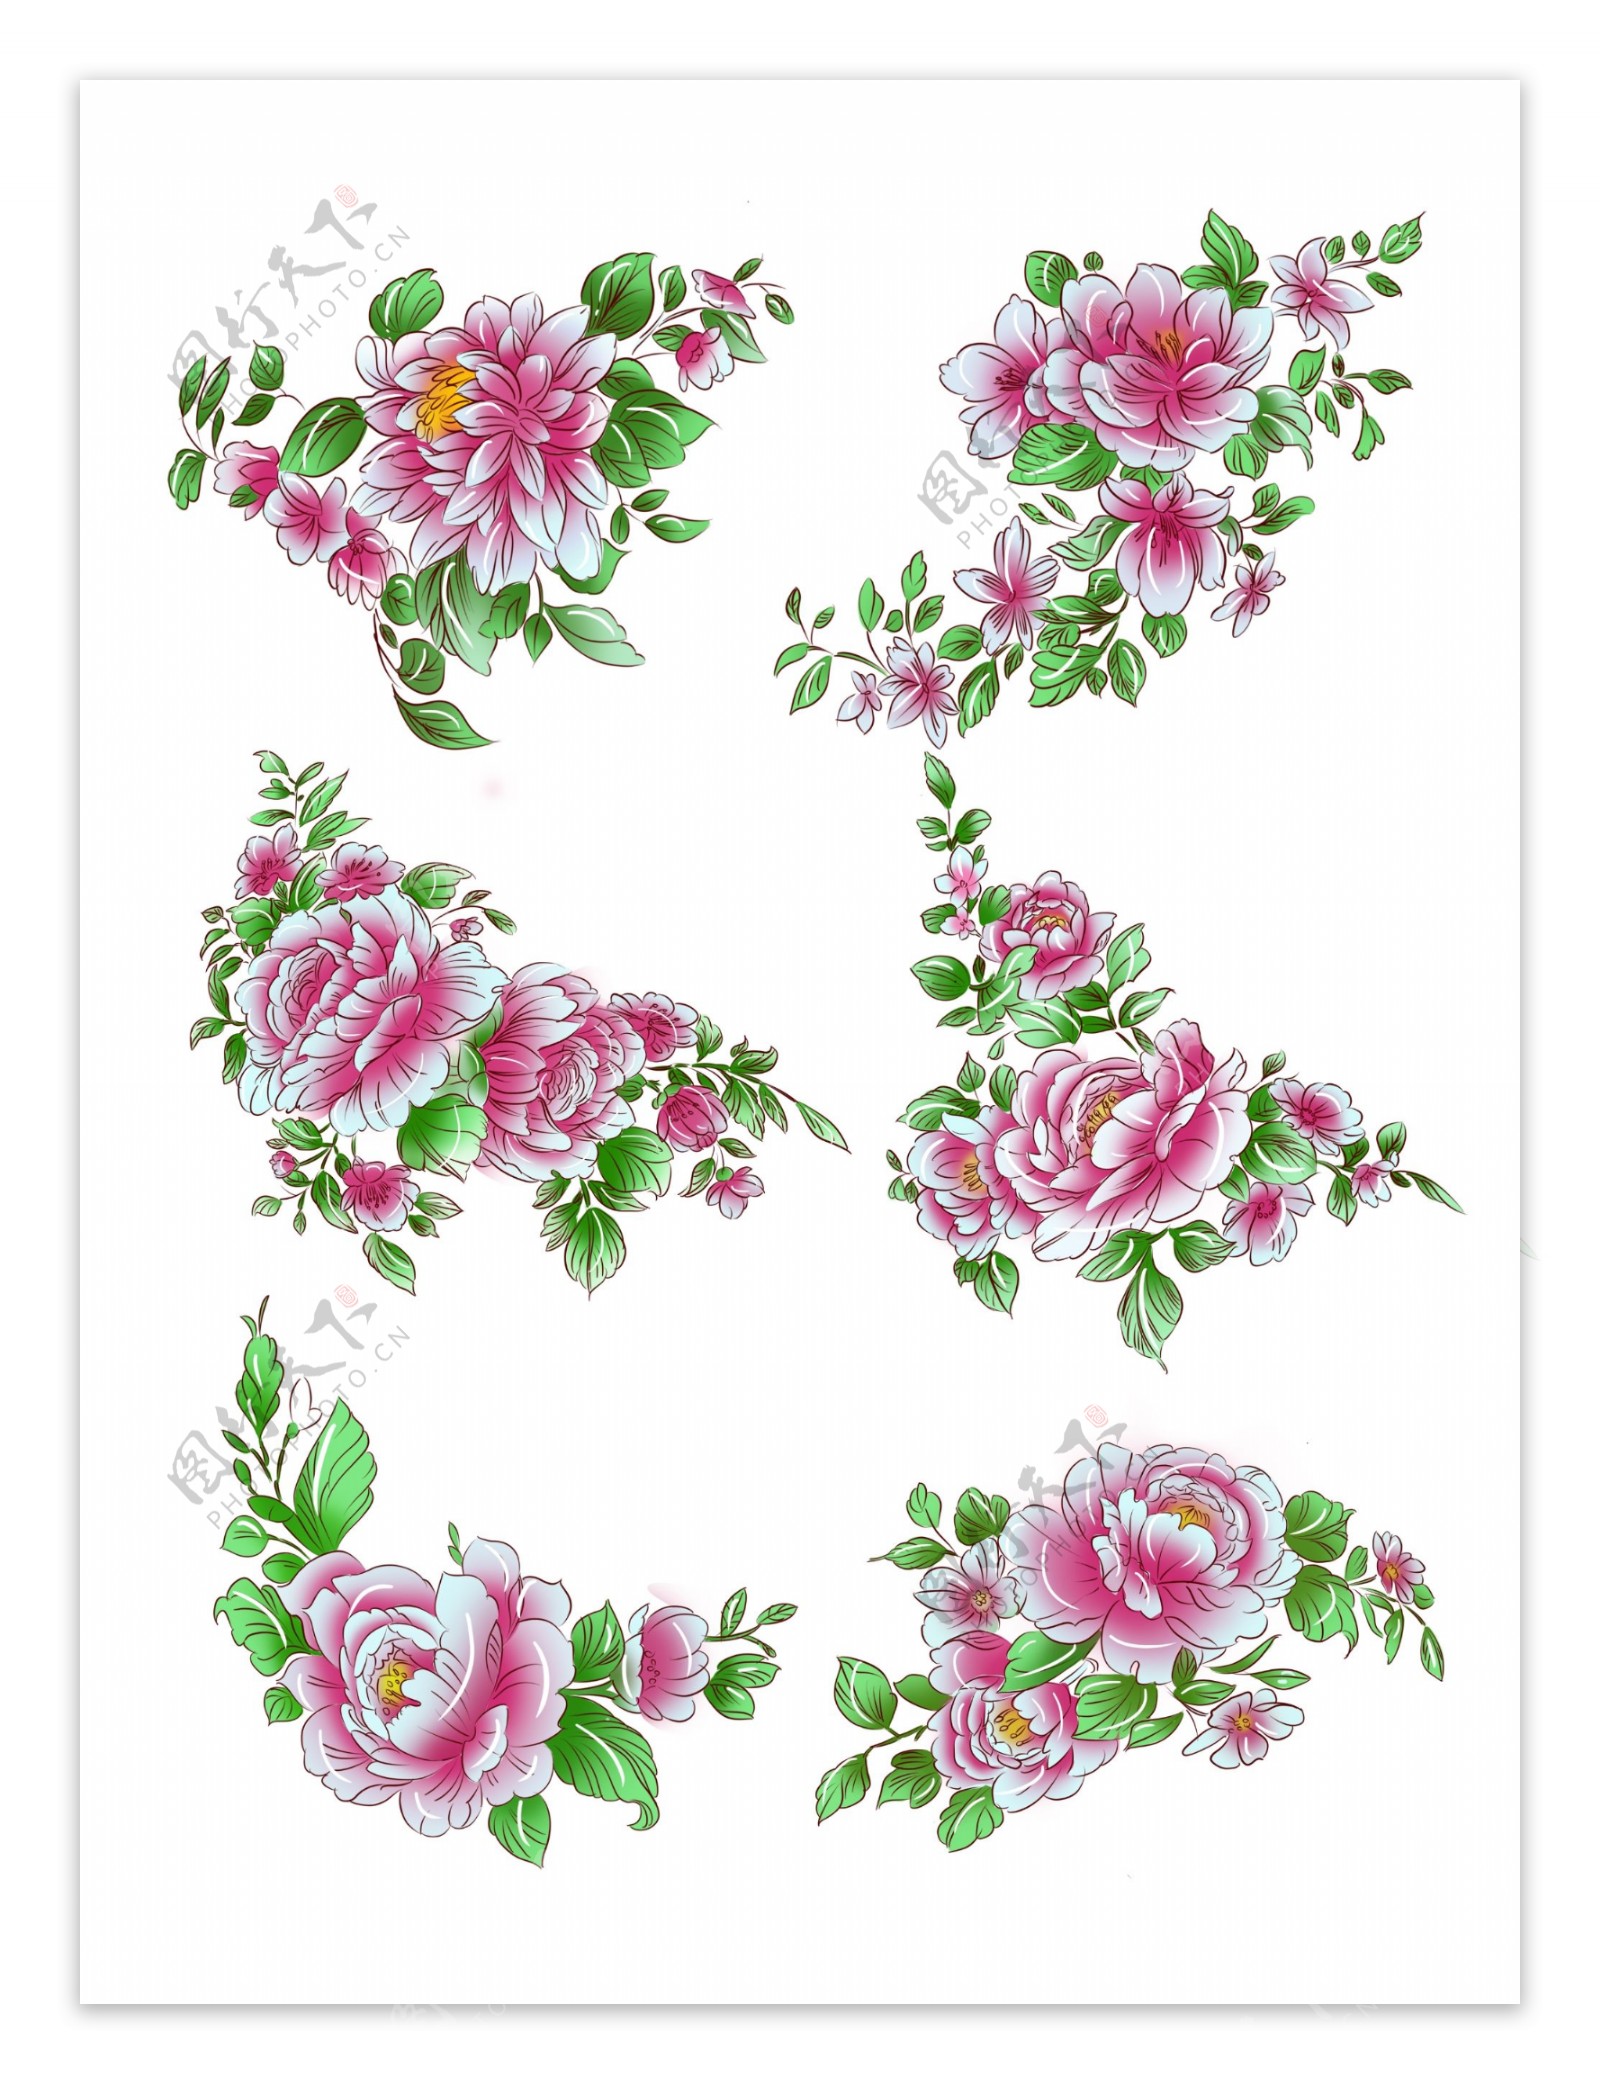 手绘植物粉红色手绘牡丹花